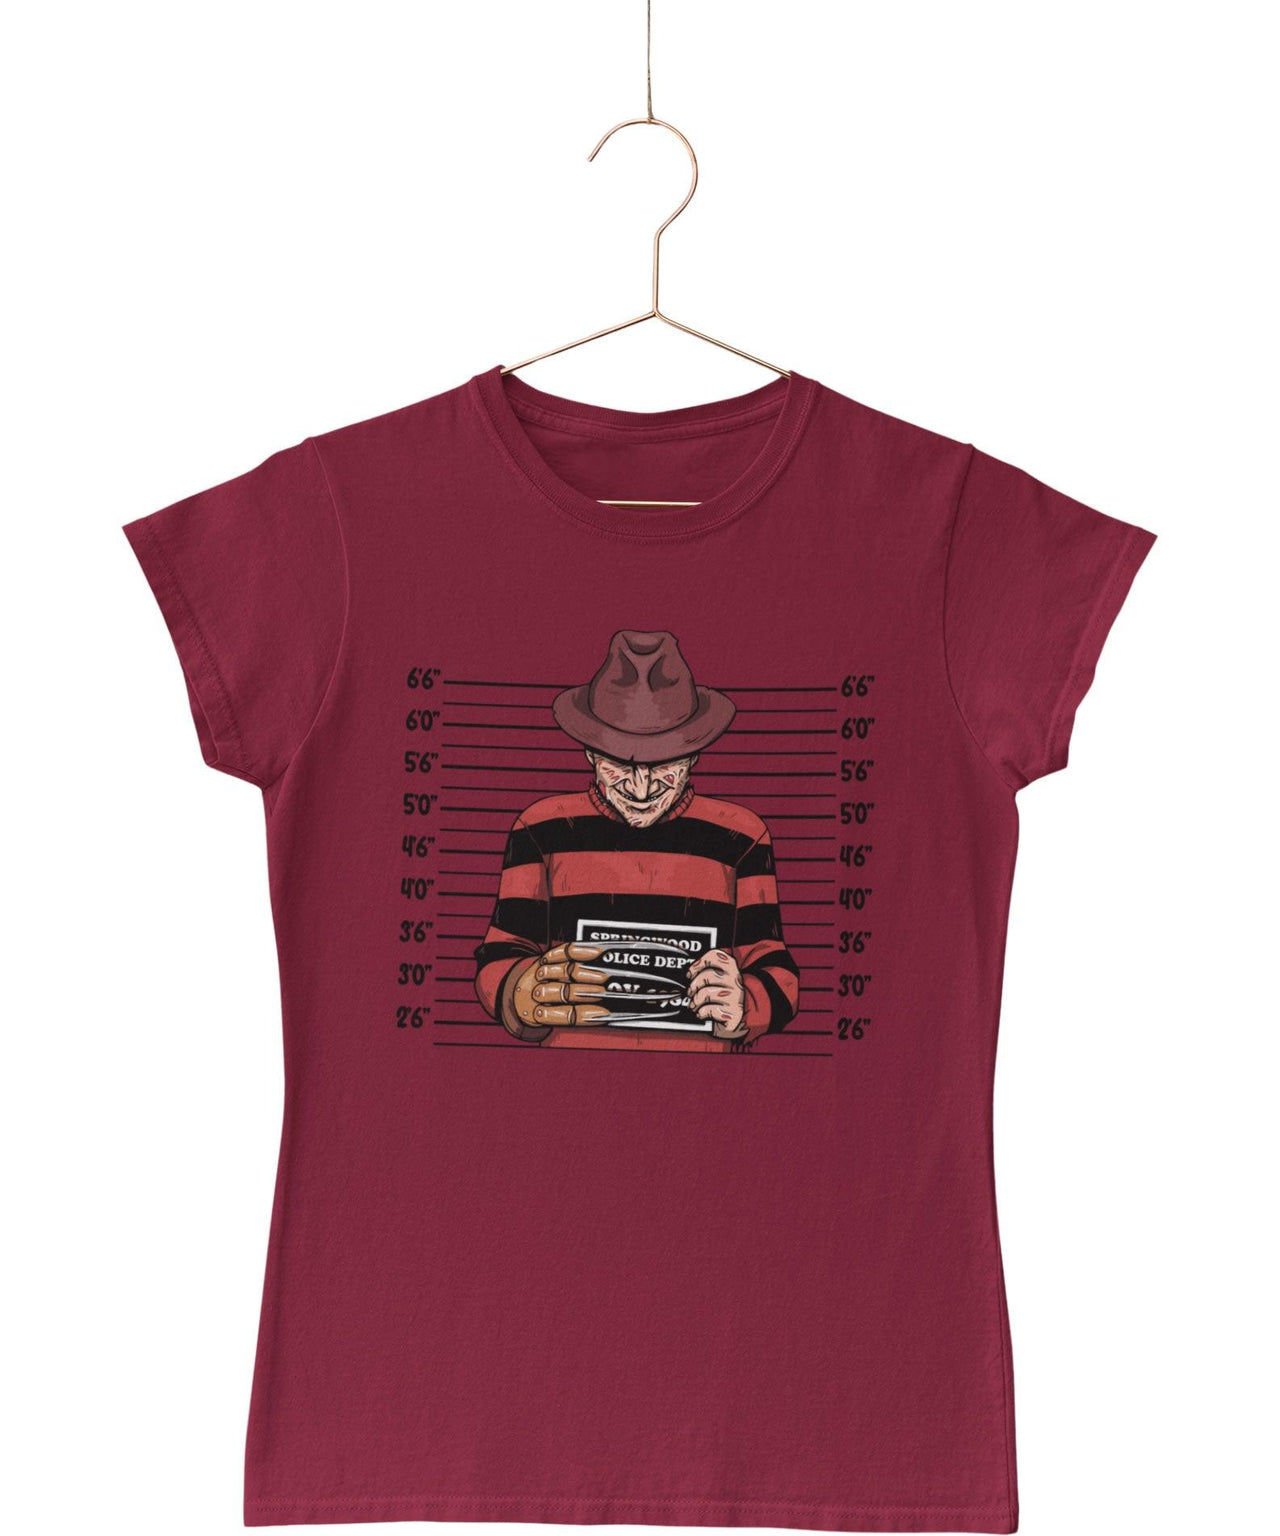 Freddy Krueger Mugshot Horror Film Tribute T-Shirt for Women 8Ball